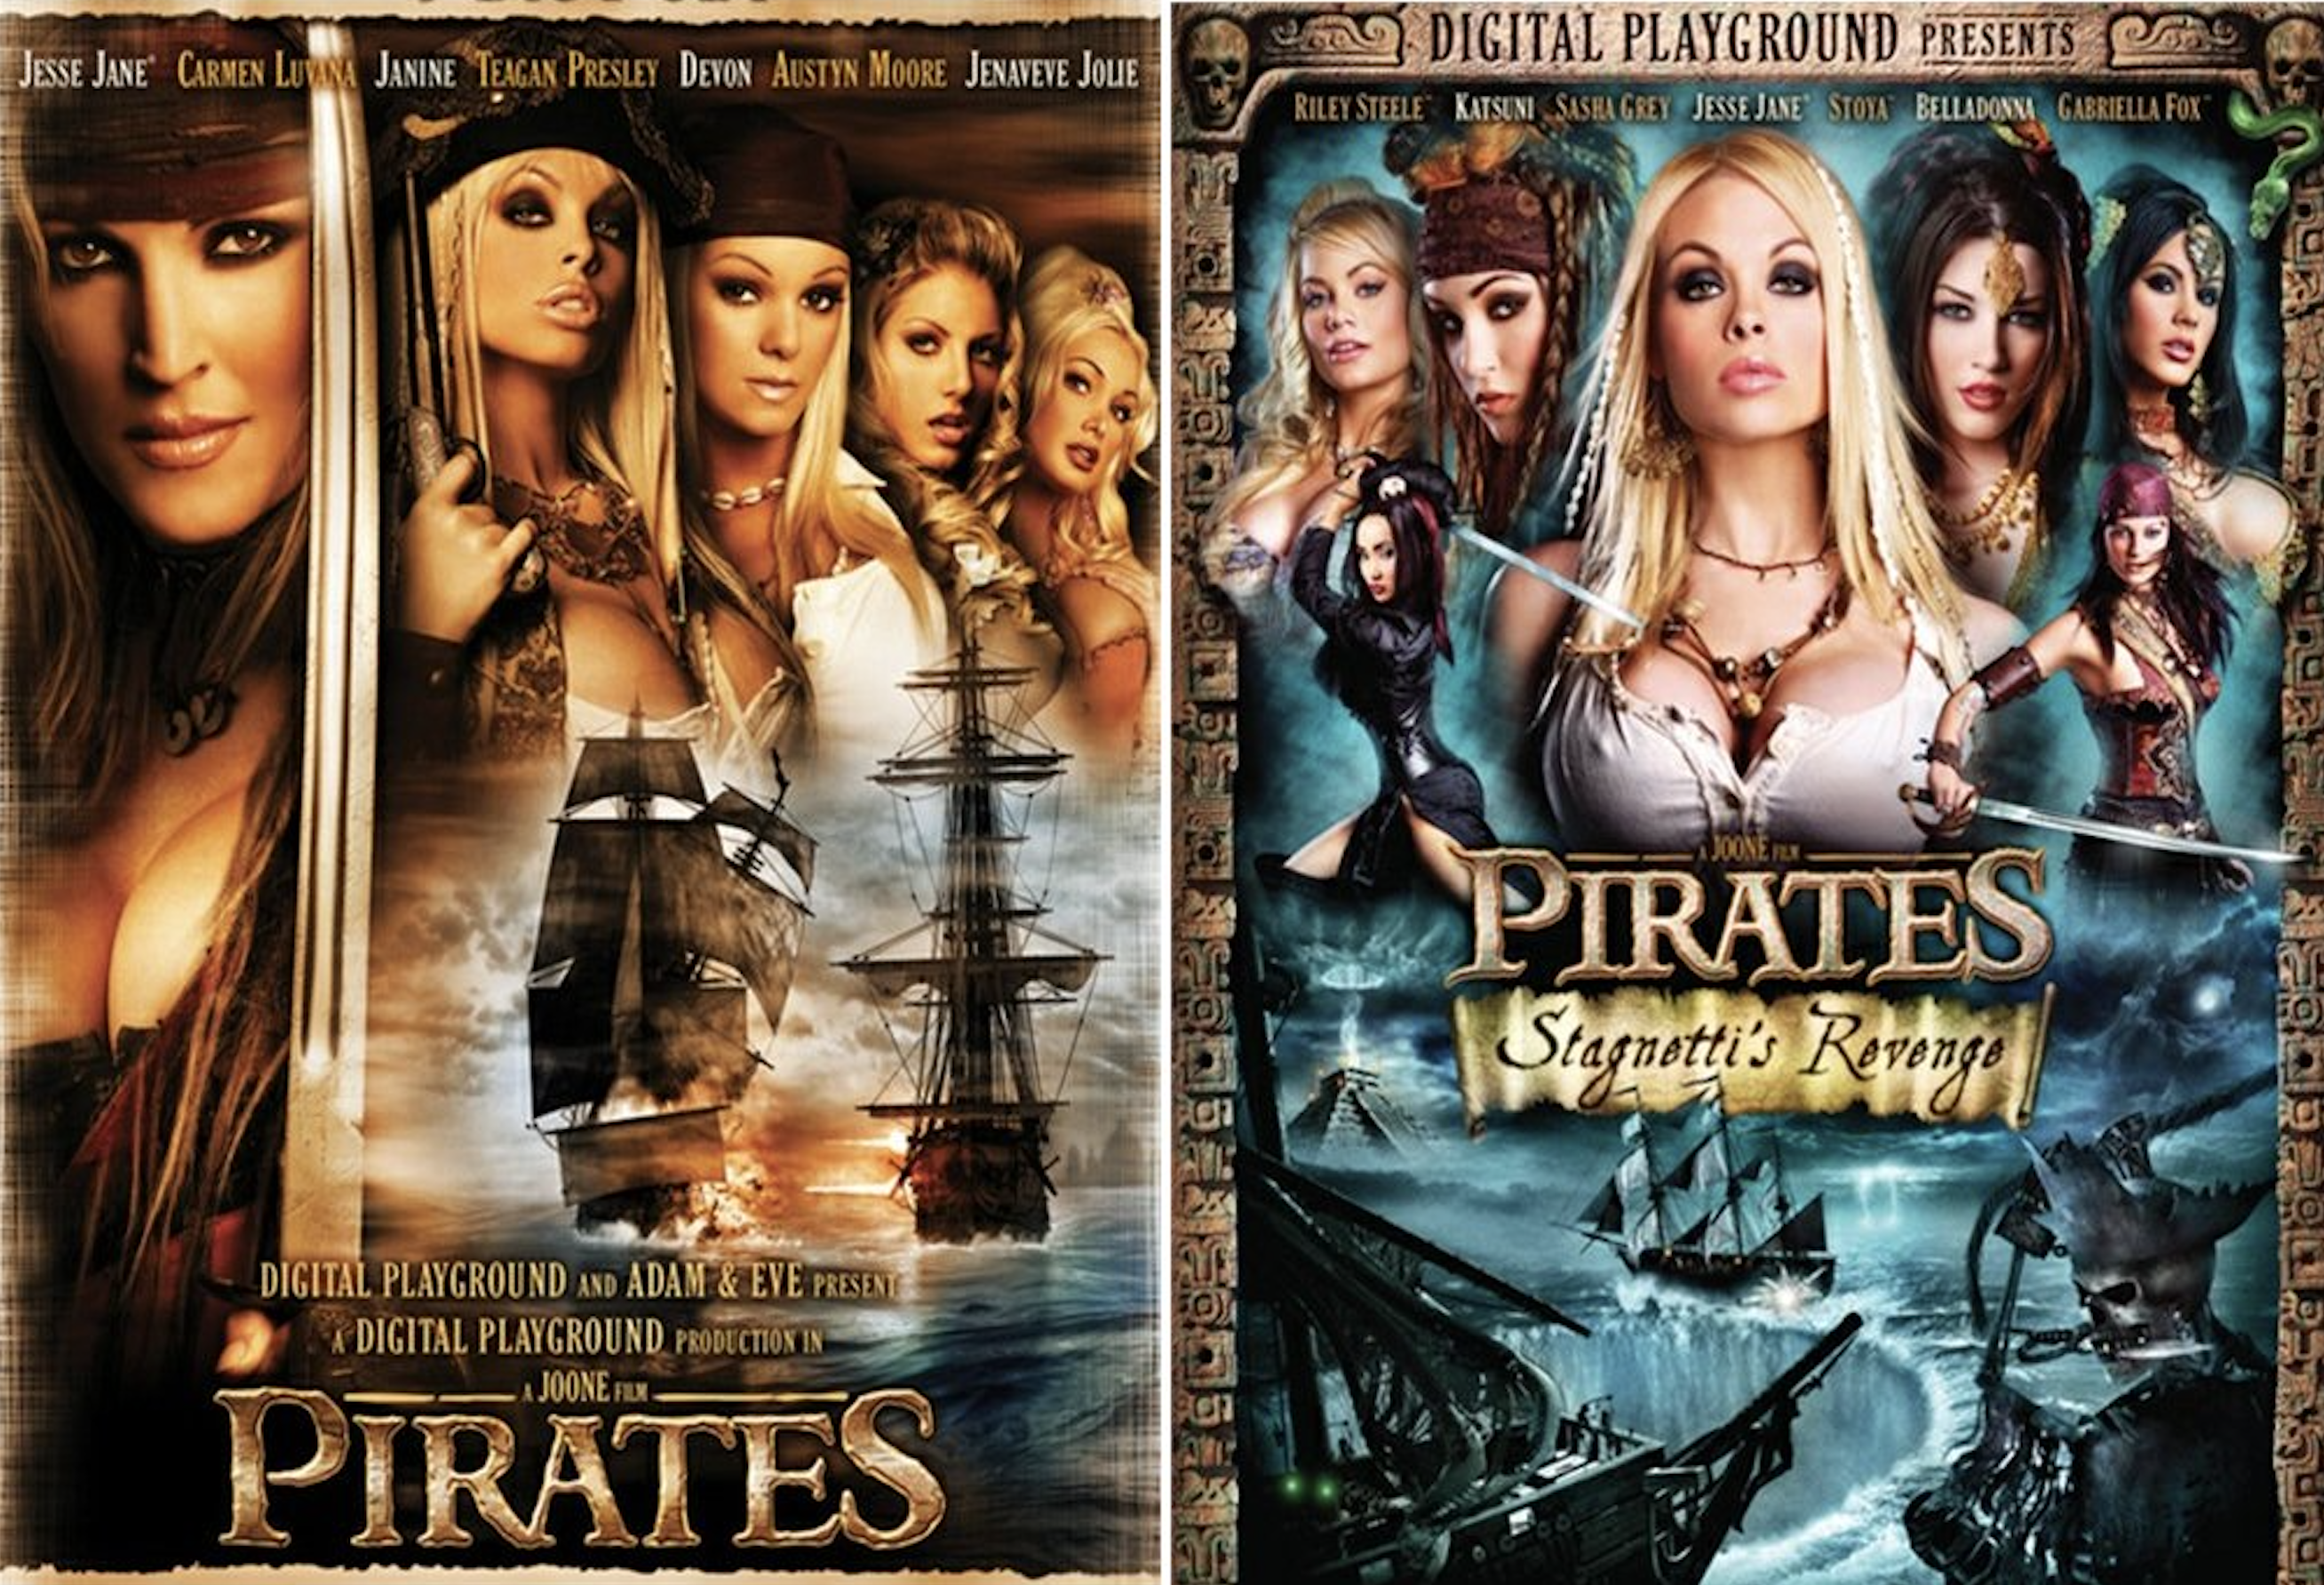 belinda shafer share pirate stagnettis revenge watch online photos